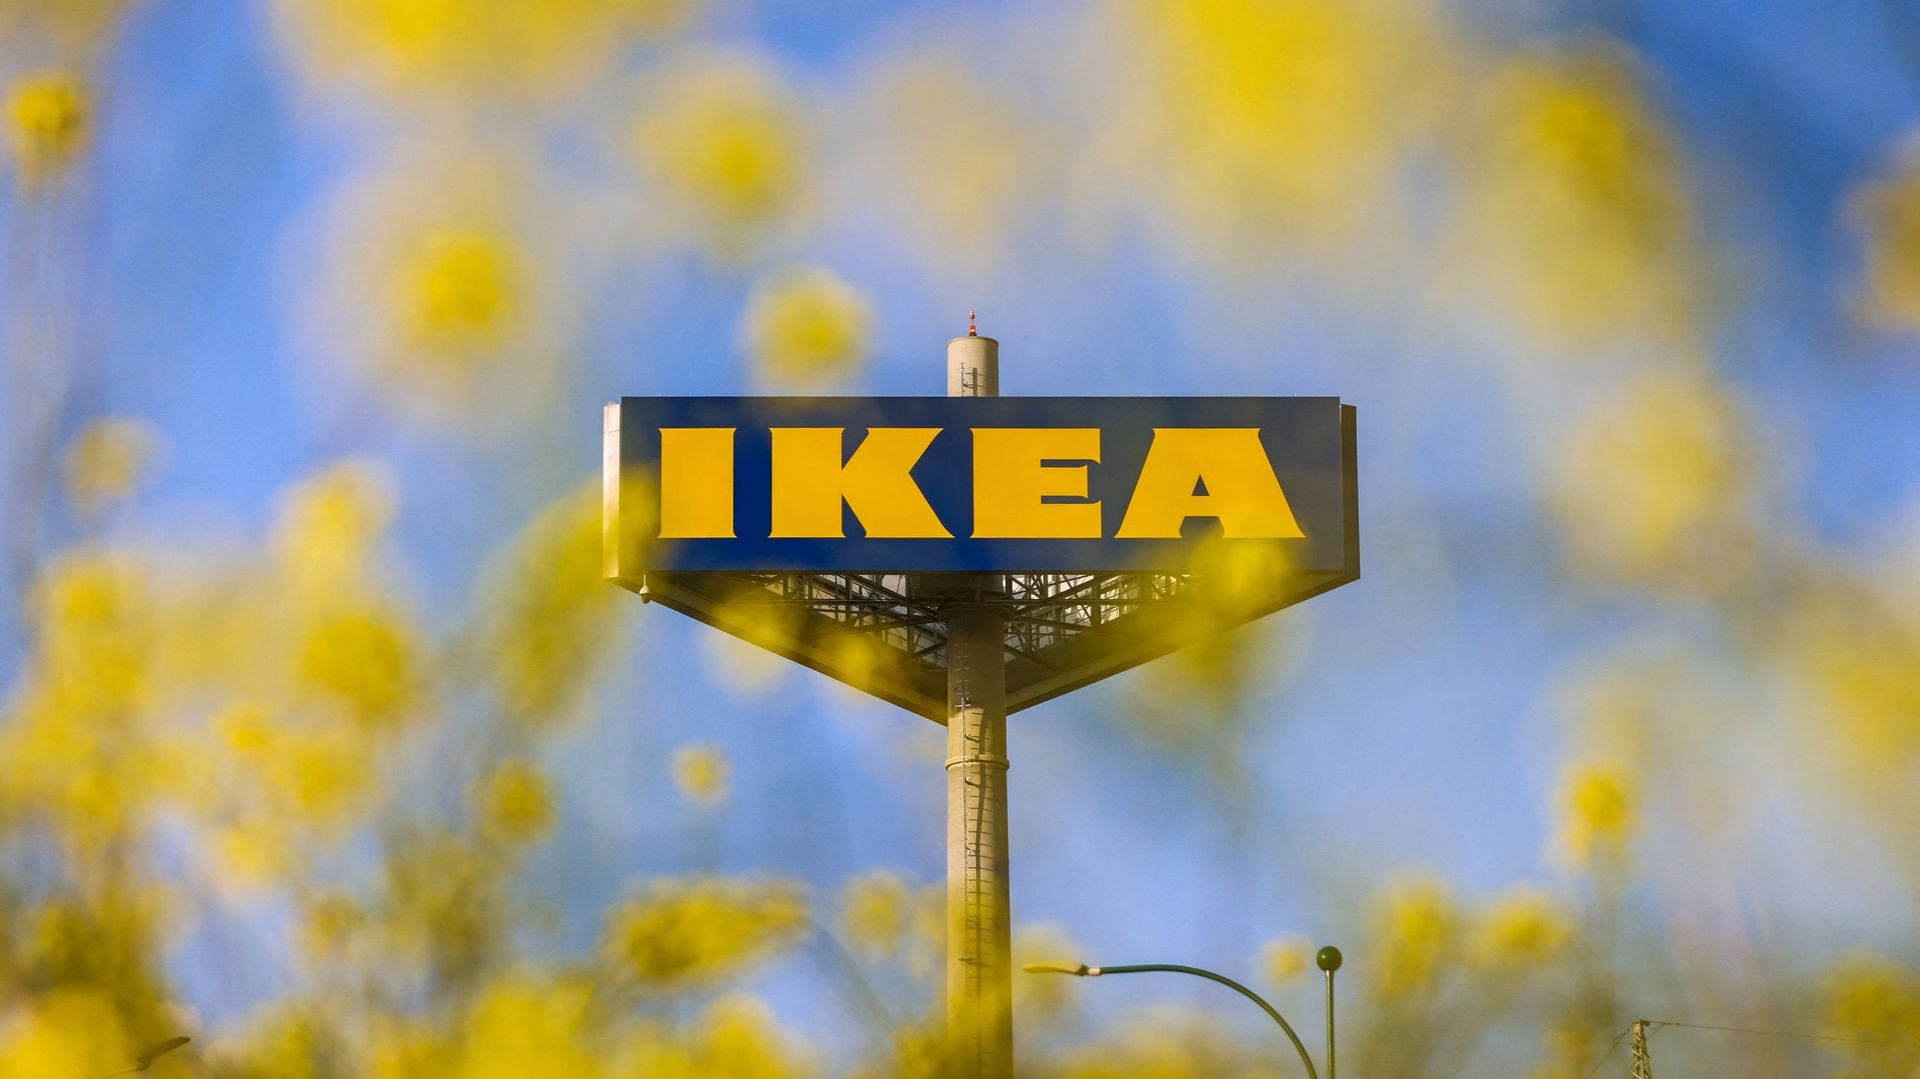 Ikea France jugé pour avoir espionné plusieurs centaines d'employés et syndicalistes